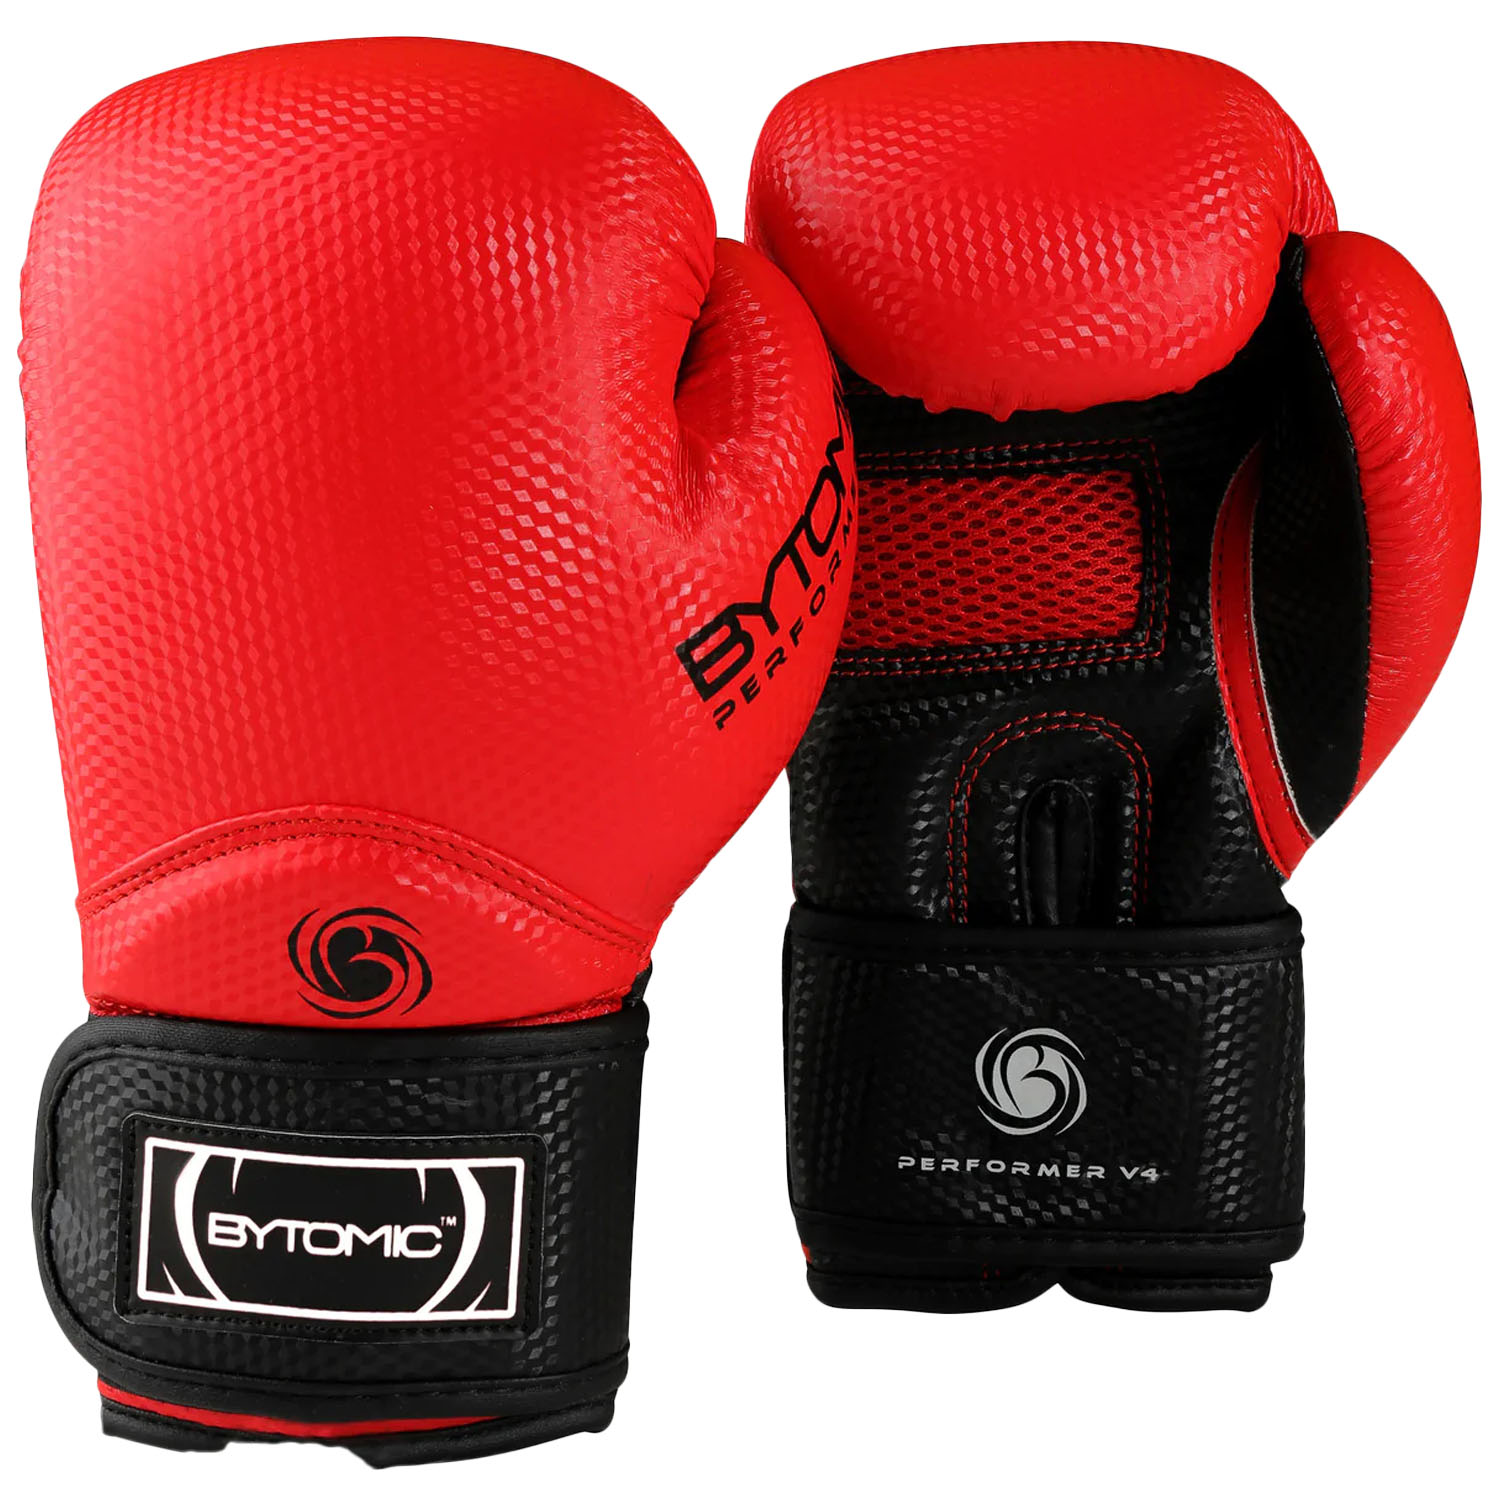 Bytomic Boxing Gloves, Performer, V4, rot, 12 Oz